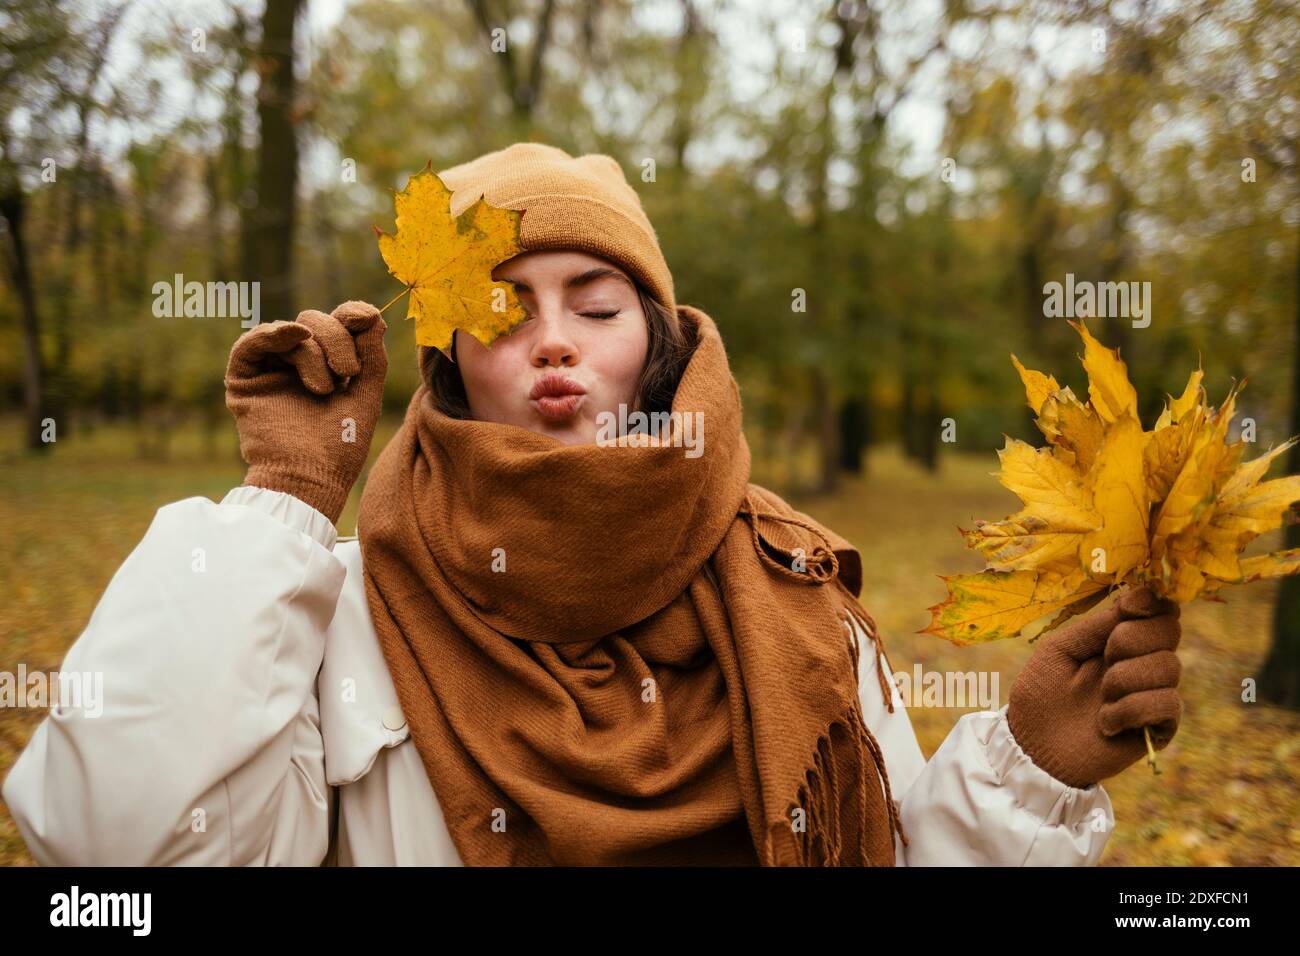 Junge Frau mit geschlossenen Augen Puckering während der Abdeckung Auge mit Herbstblatt im öffentlichen Park Stockfoto